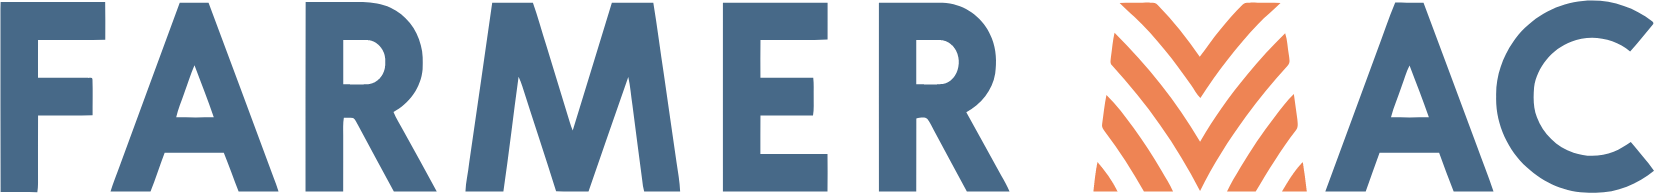 Federal Agricultural Mortgage logo large (transparent PNG)